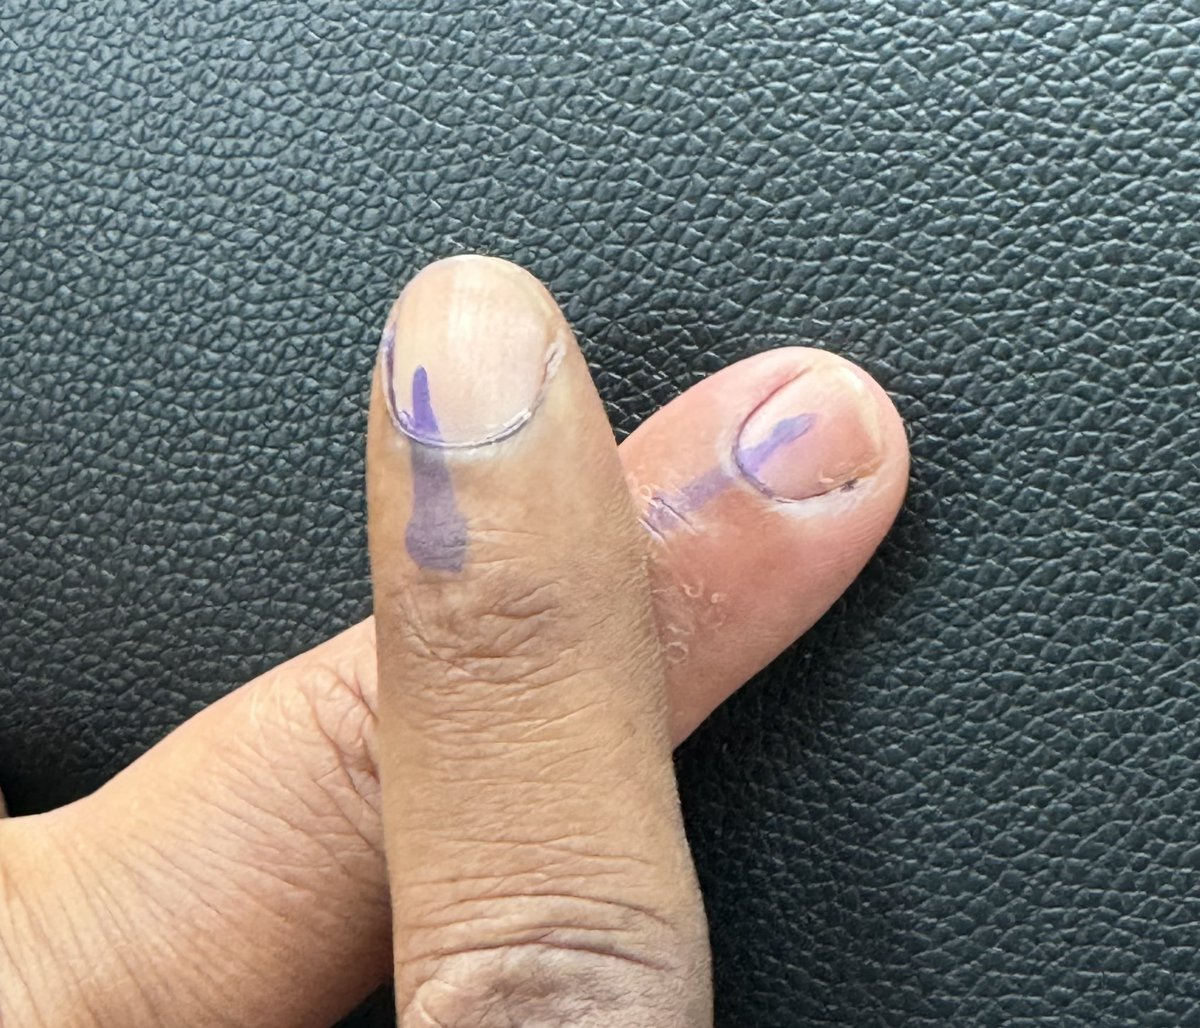 Me & Wife doing our duty.
#LokSabaElections2024 #BangaloreCentral #FestivalofDemocracy